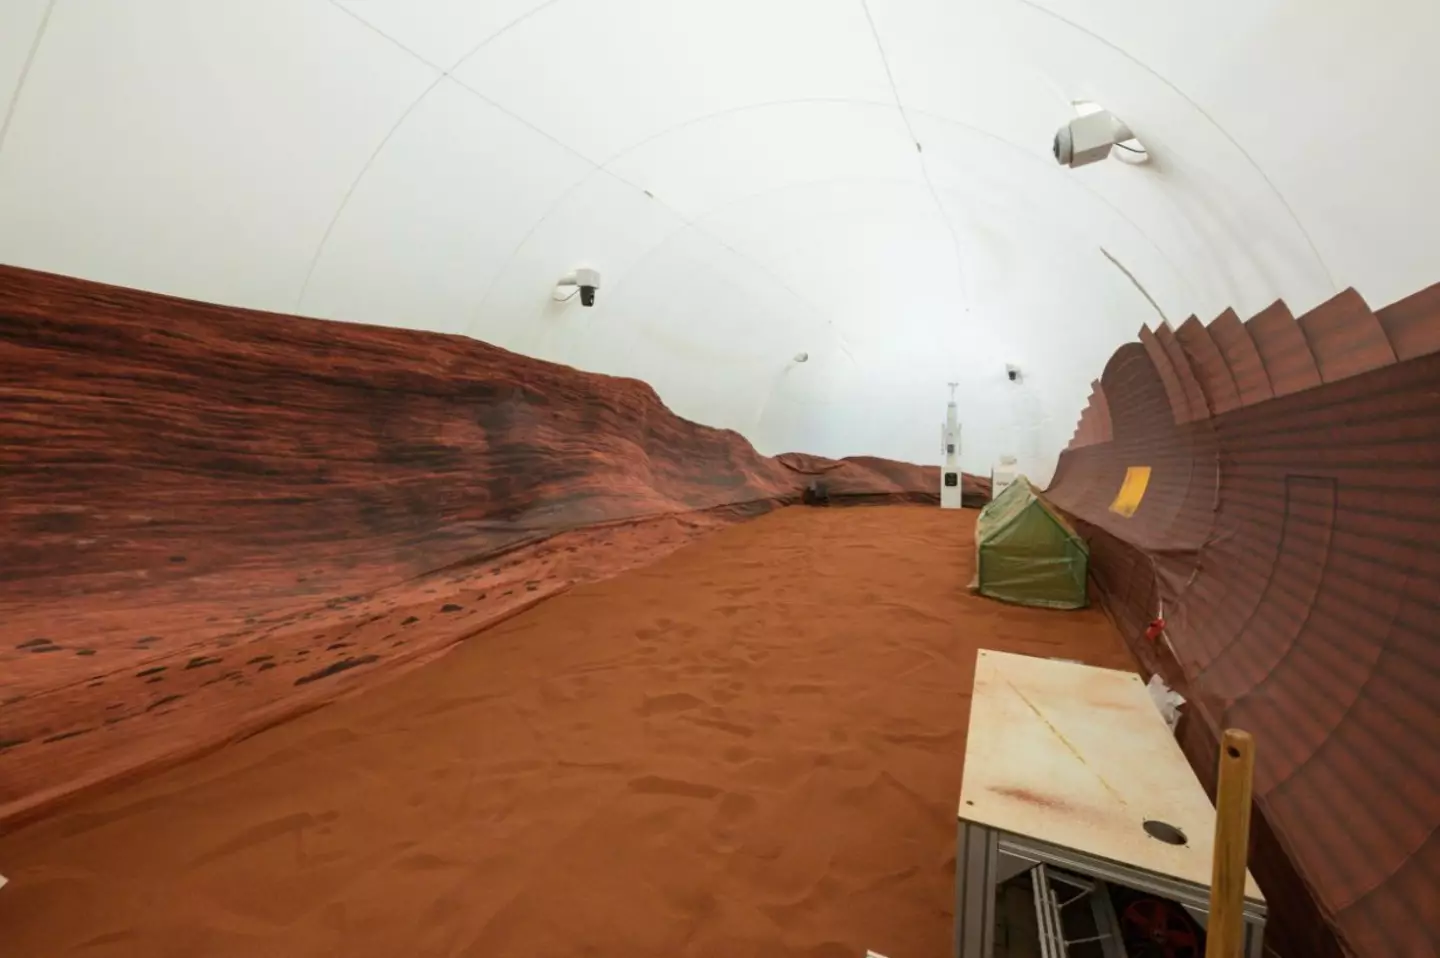 Part of NASA's fake Mars base.